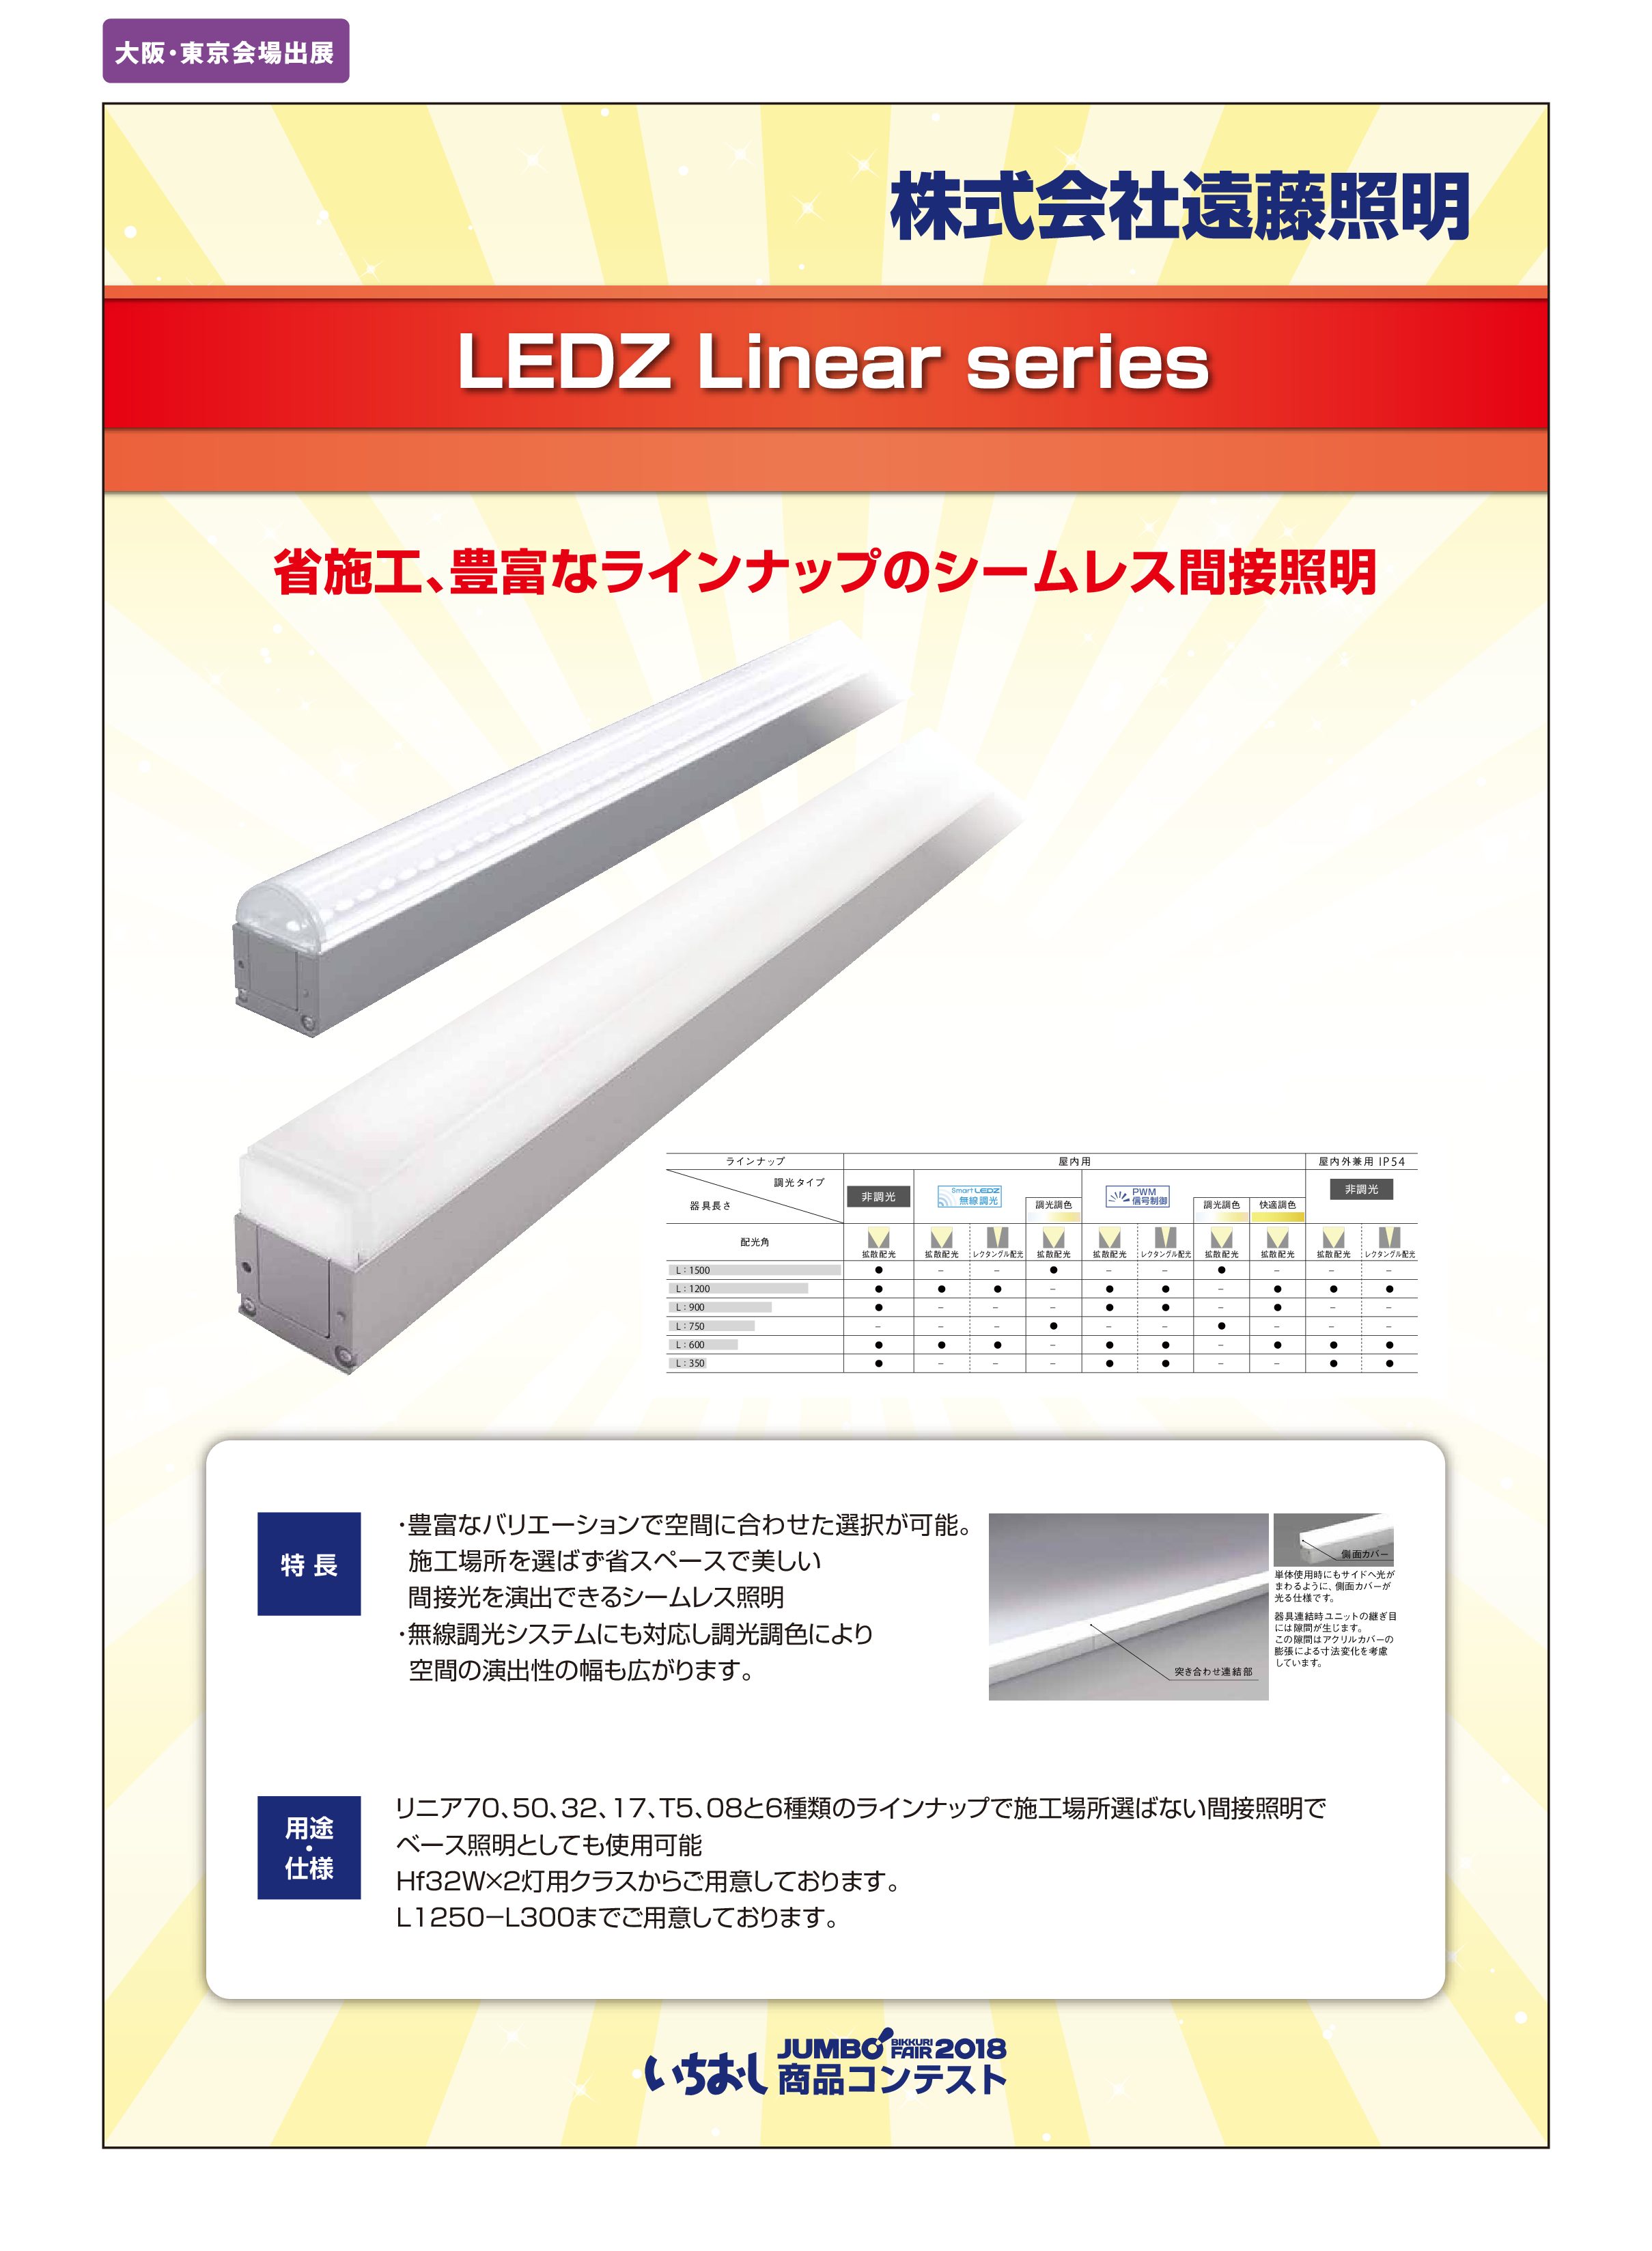 「LEDZ Linear series」株式会社遠藤照明の画像